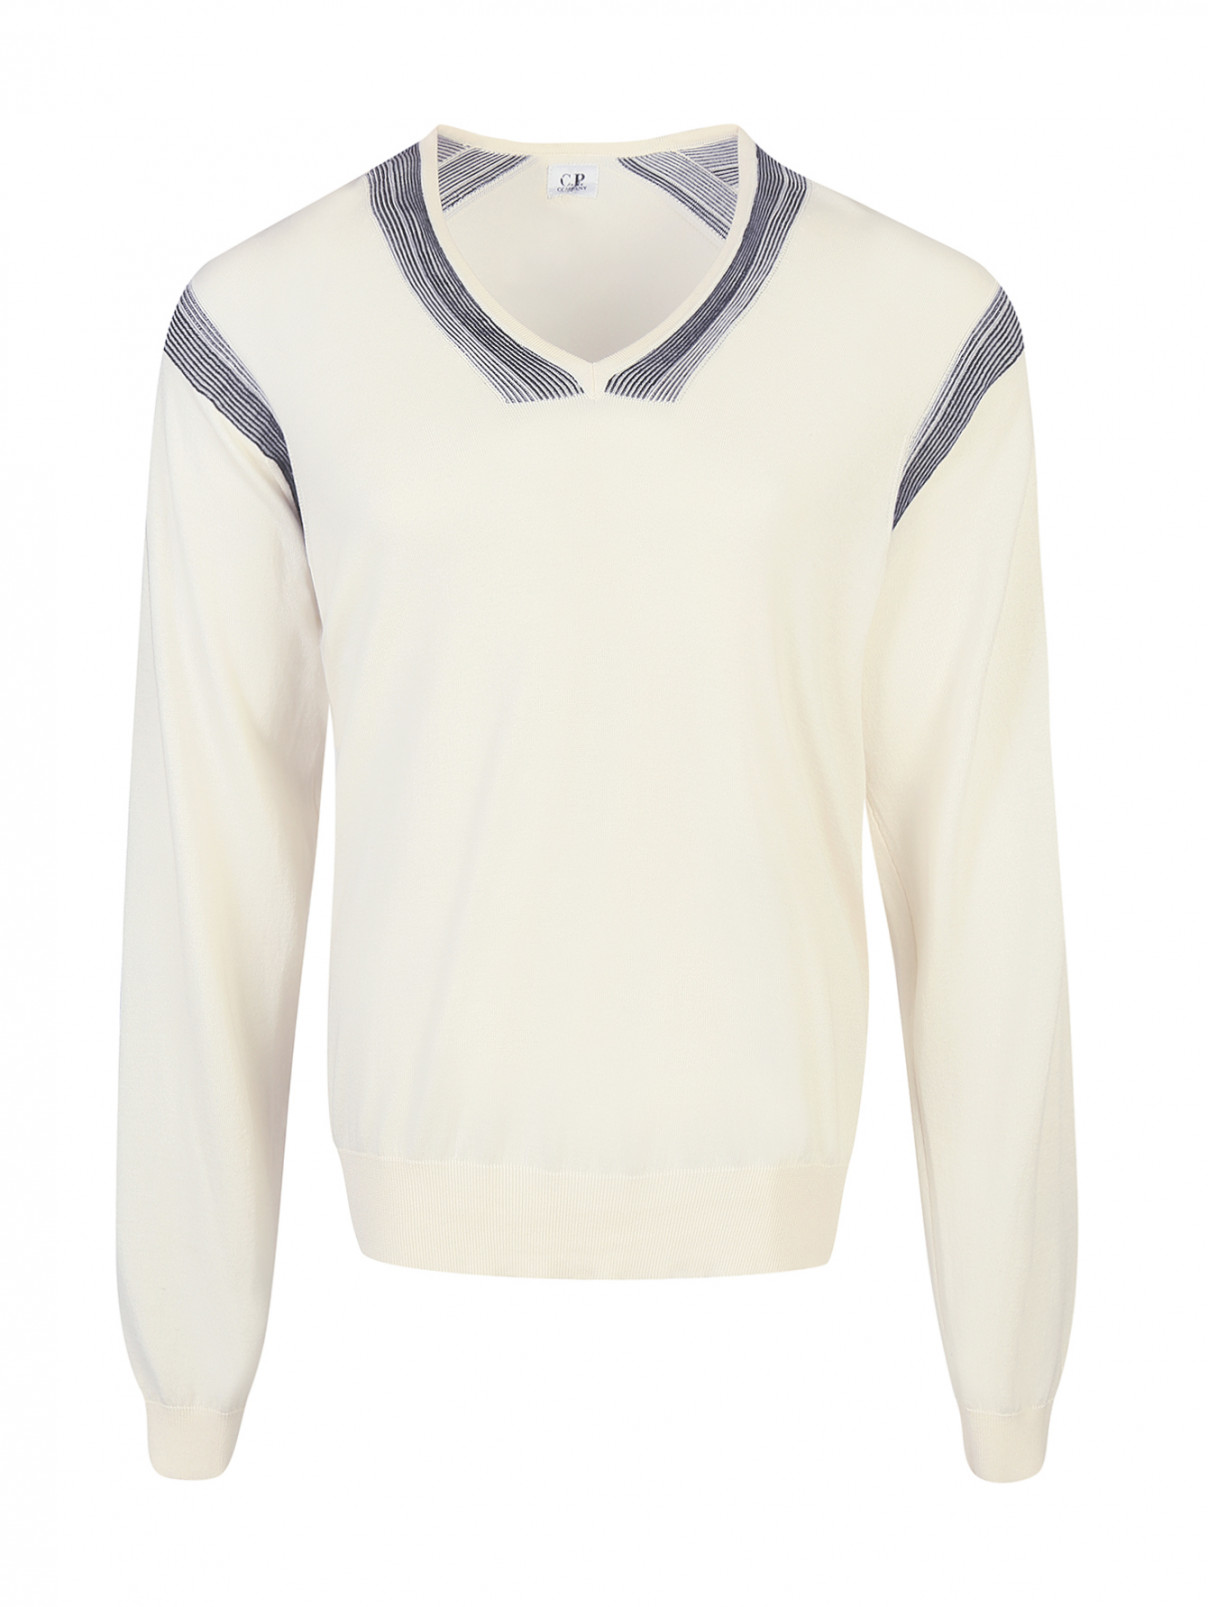 Пуловер из хлопка и шелка C.P. Company  –  Общий вид  – Цвет:  Белый